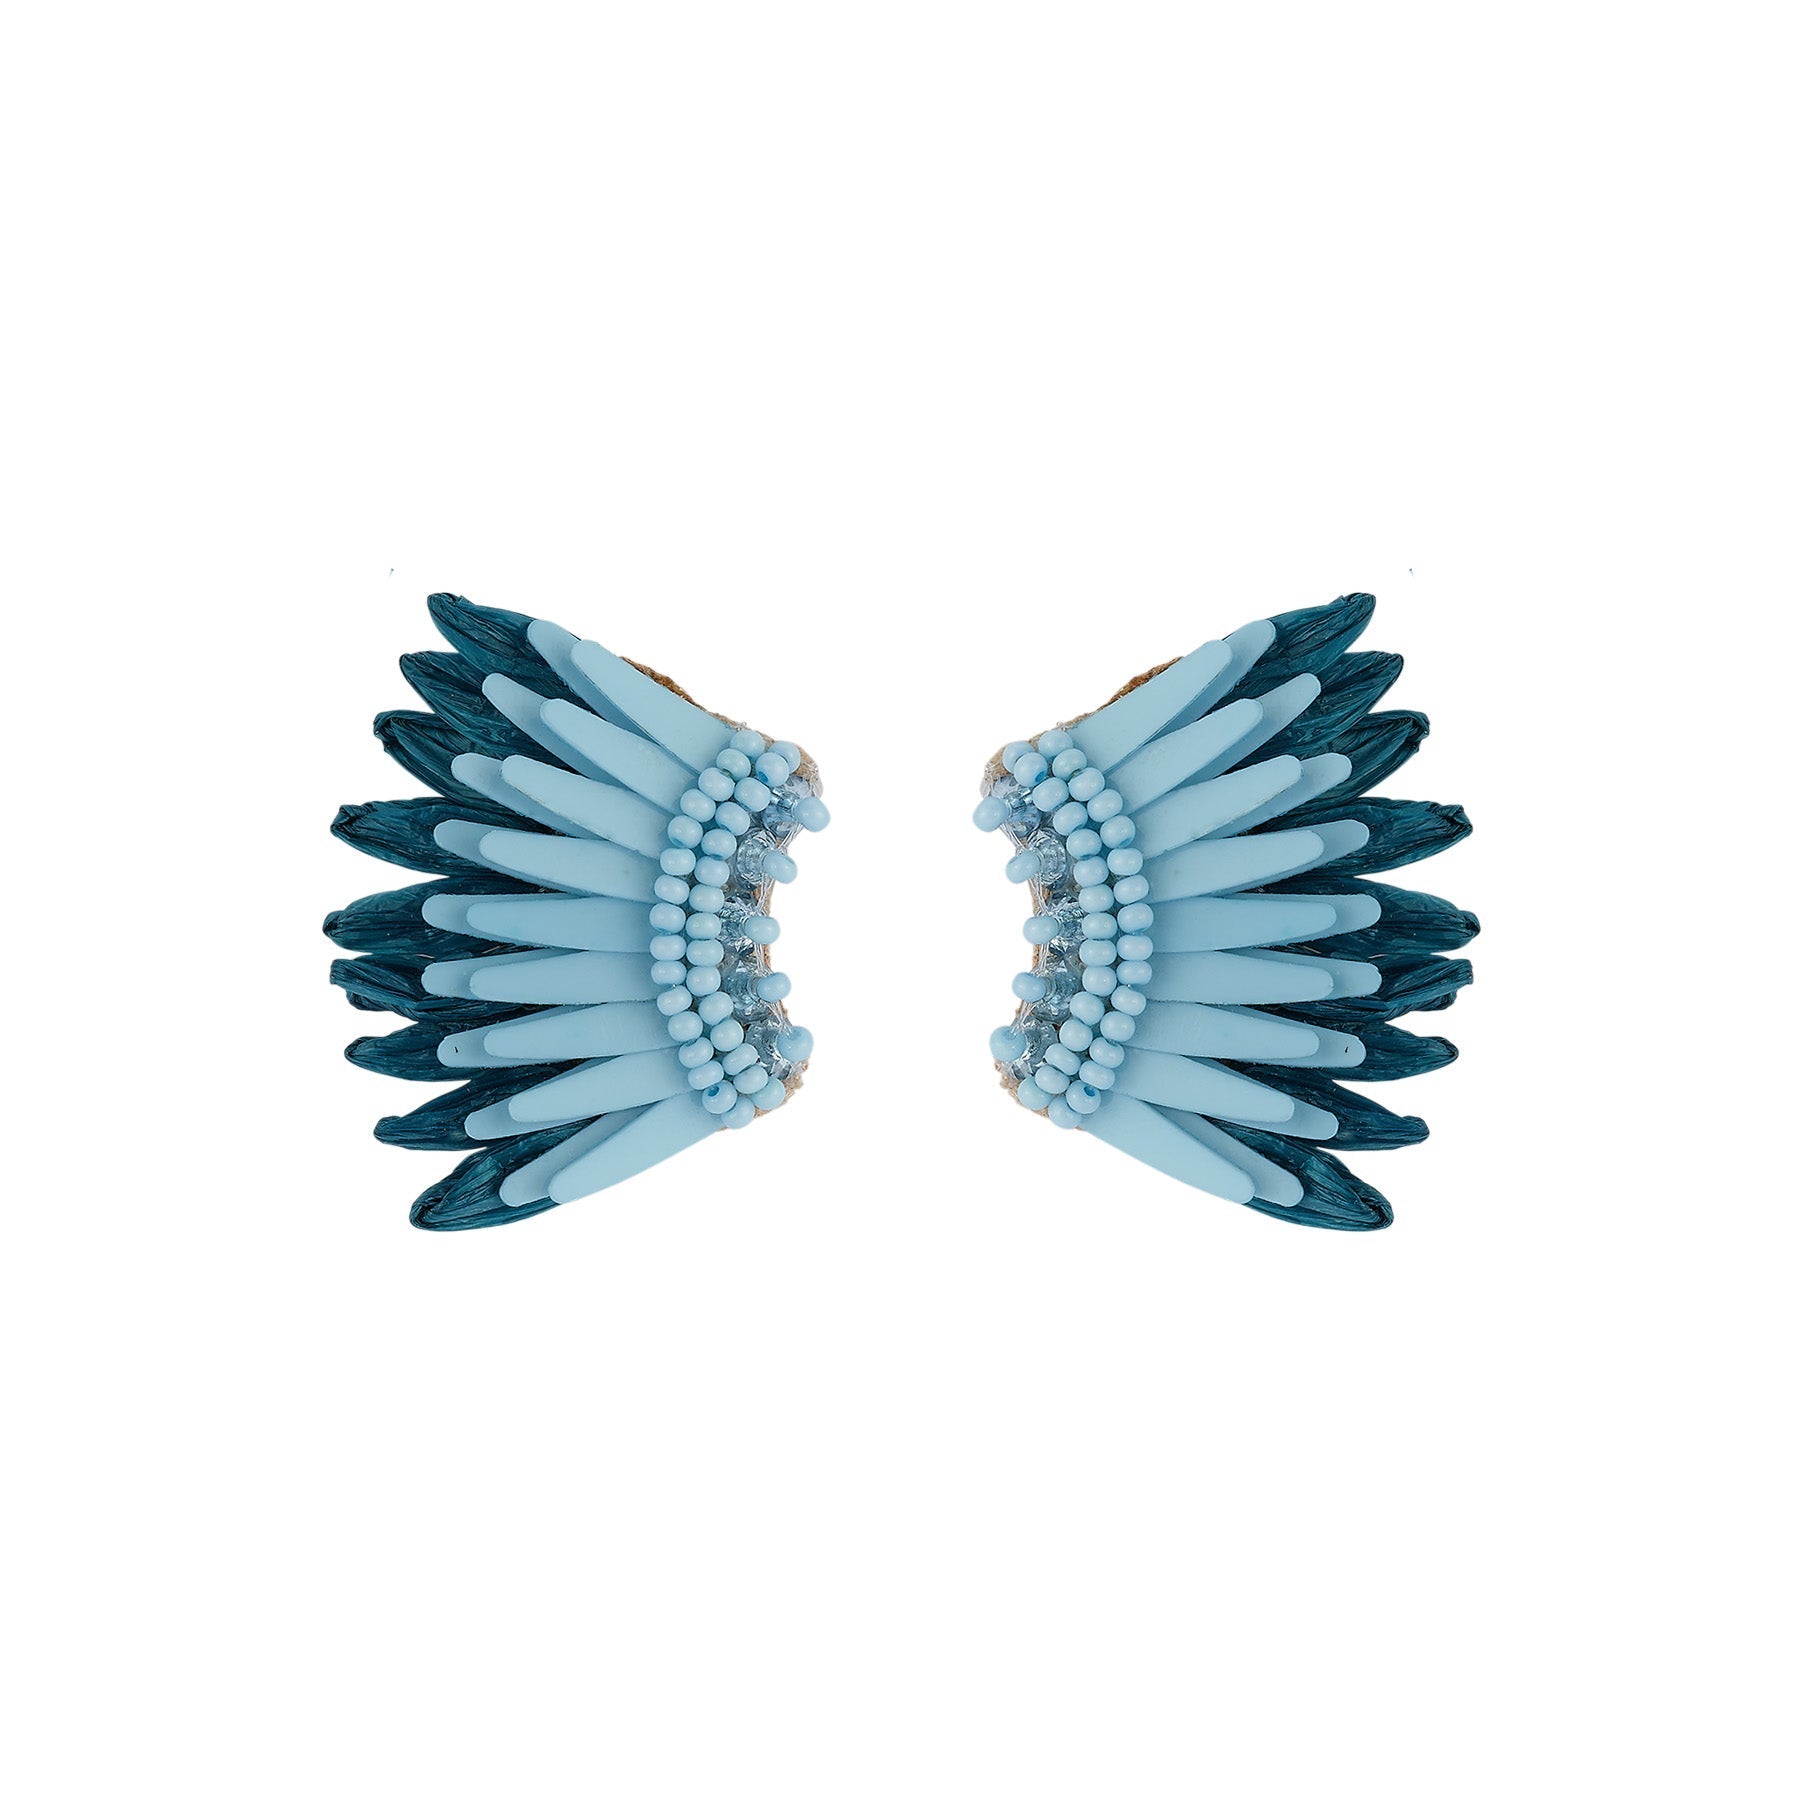 Micro Raffia Madeline Earrings by Mignonne Gavigan